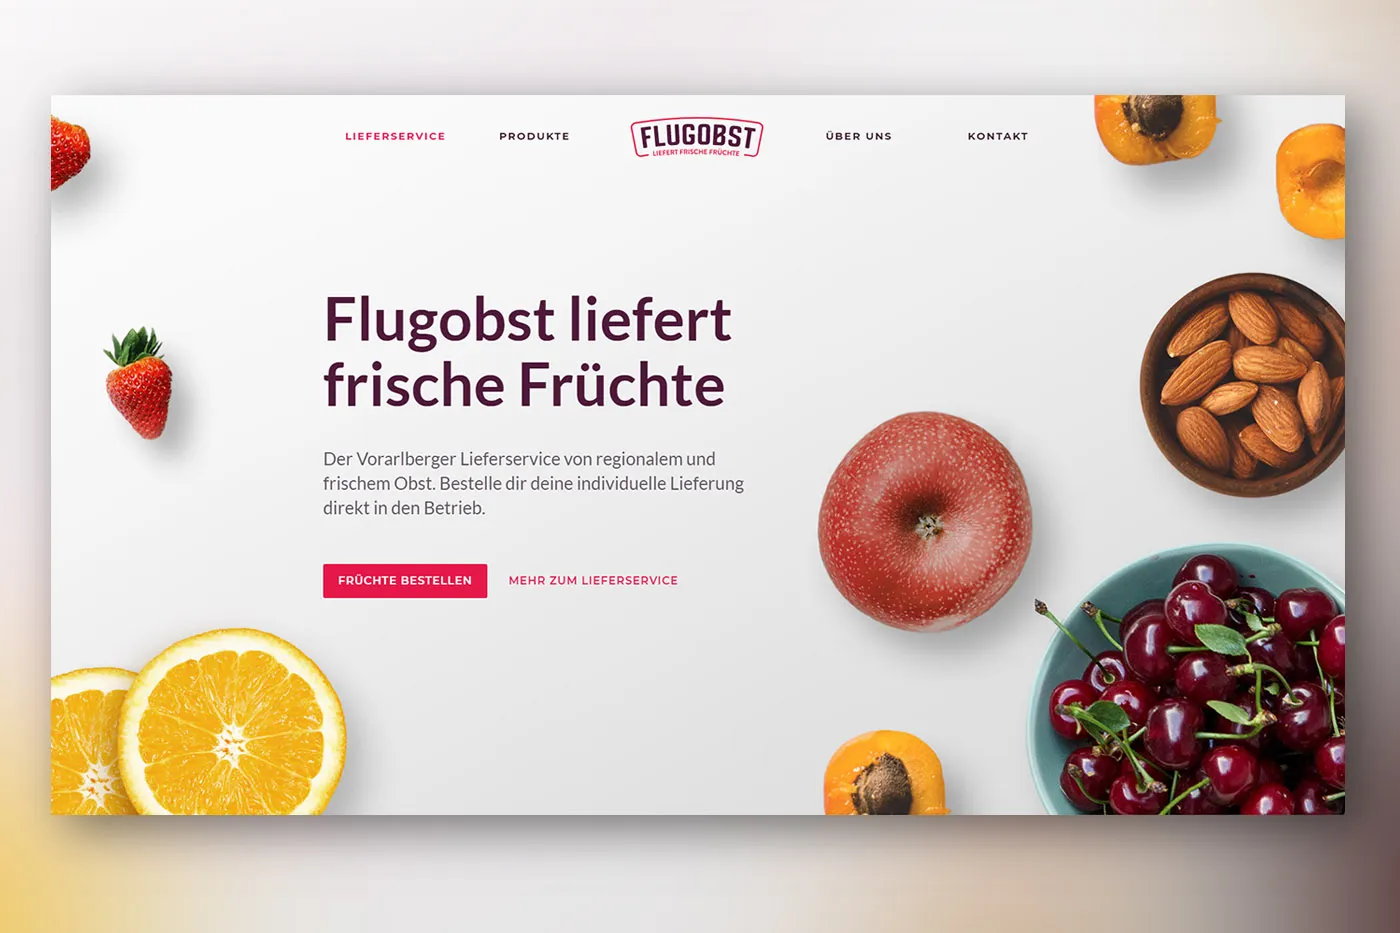 Webdesign Flugobst - Lieferung liefert frische Früchte - Vorarlberg